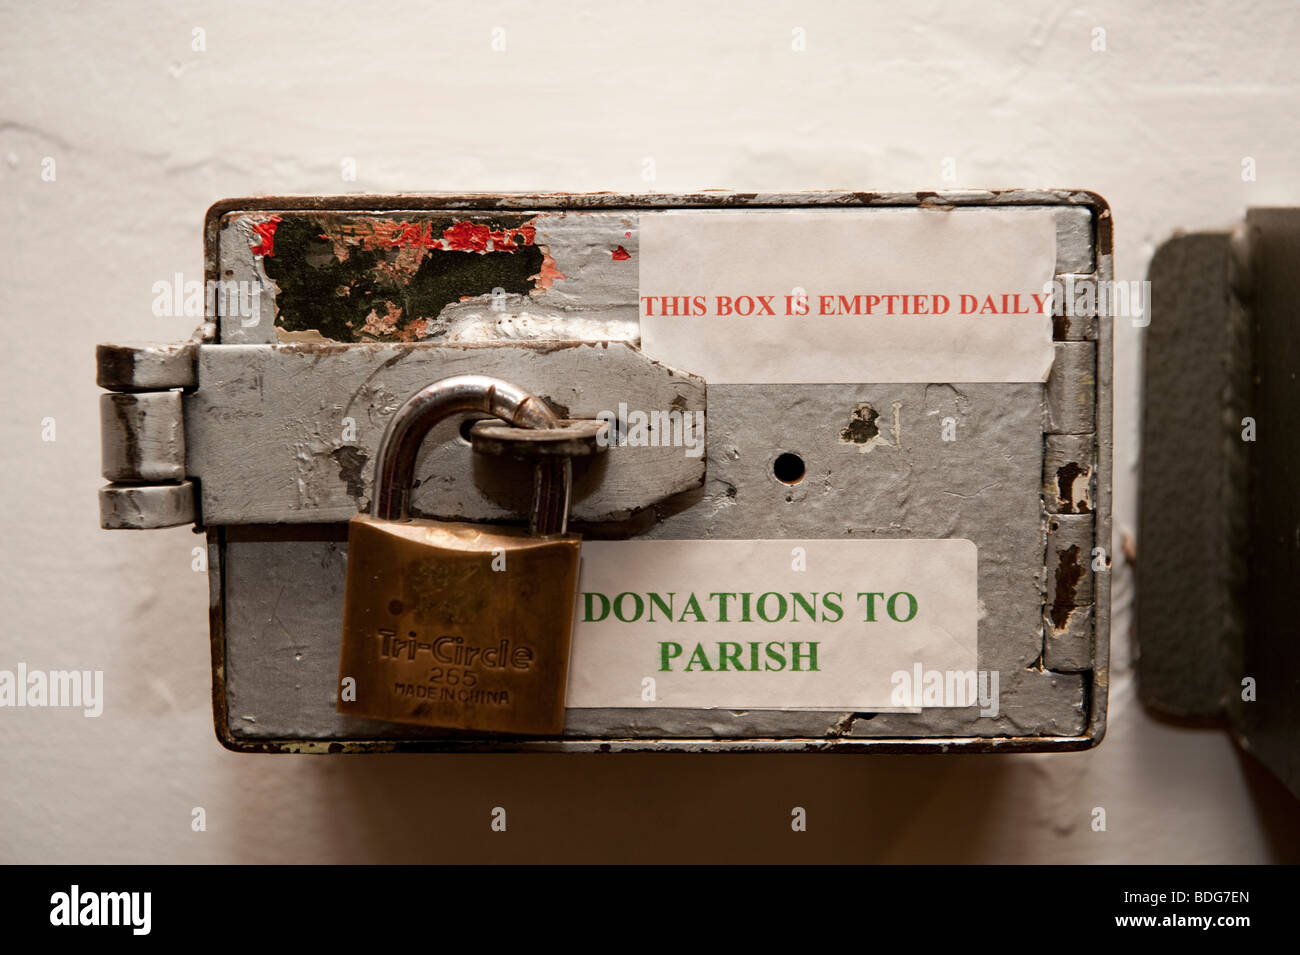 Une église paroissiale cadenassée de l'argent des dons fort UK 'cette boîte est vidée tous les jours" Banque D'Images